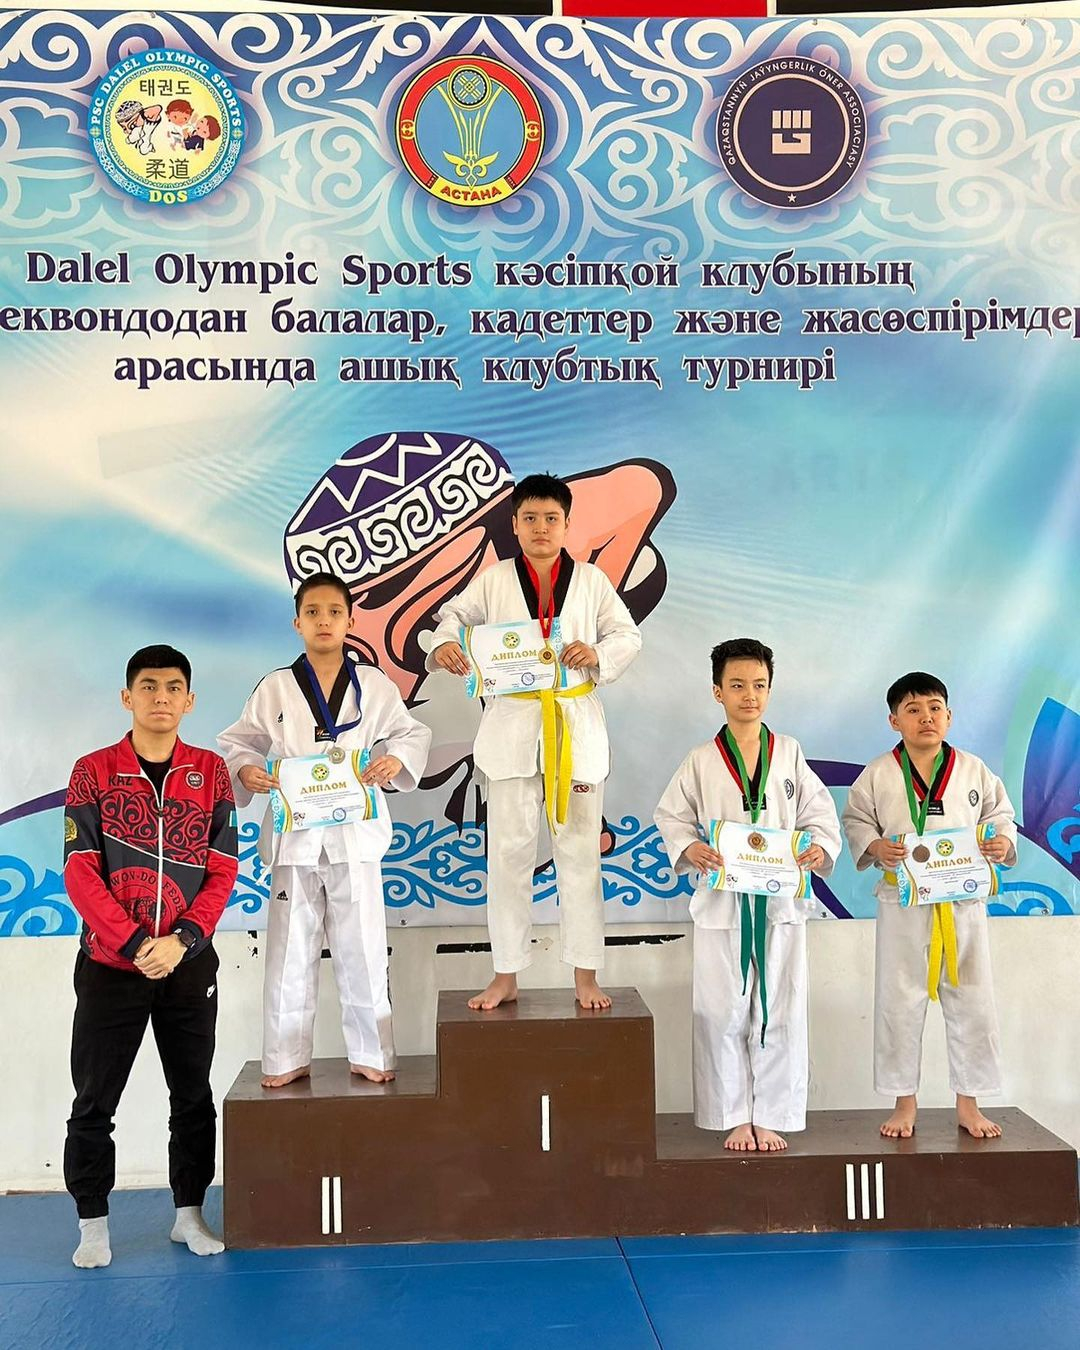 Астана қаласында өткен «Dalel Olympic Sports» кәсіпқой клубының (WT) таеквондодан балалар, кадеттер және жасөспірімдер арасында ашық клубтық турнирінде ||-орынға ие болған Сабыржан Ералыны құттықтаймыз!